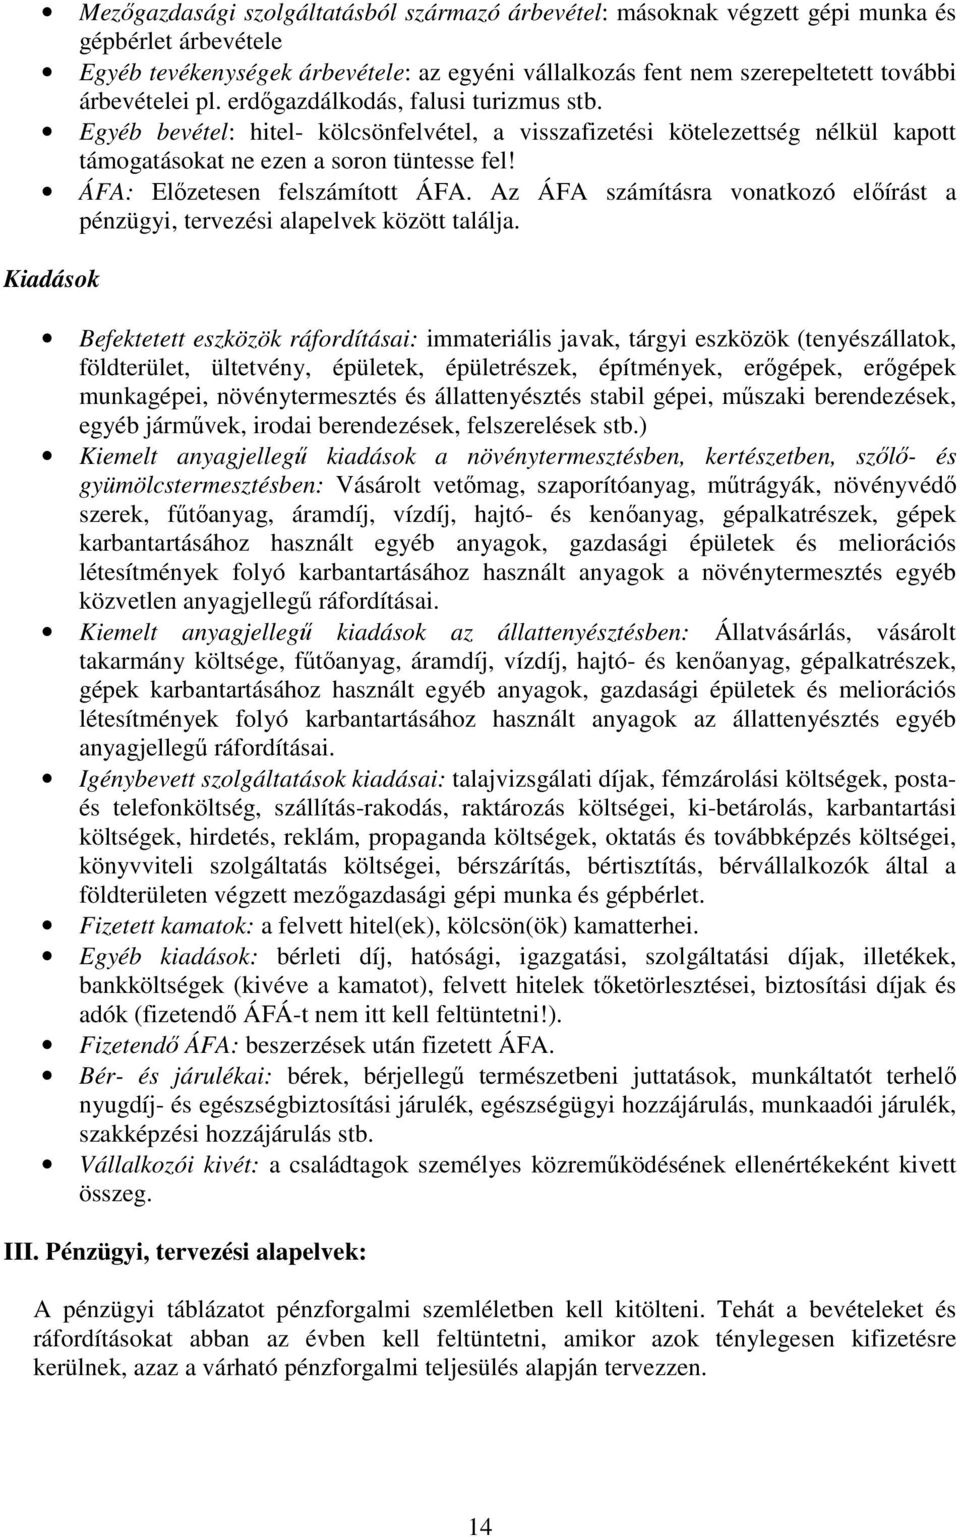 ÁFA: Elızetesen felszámított ÁFA. Az ÁFA számításra vonatkozó elıírást a pénzügyi, tervezési alapelvek között találja.